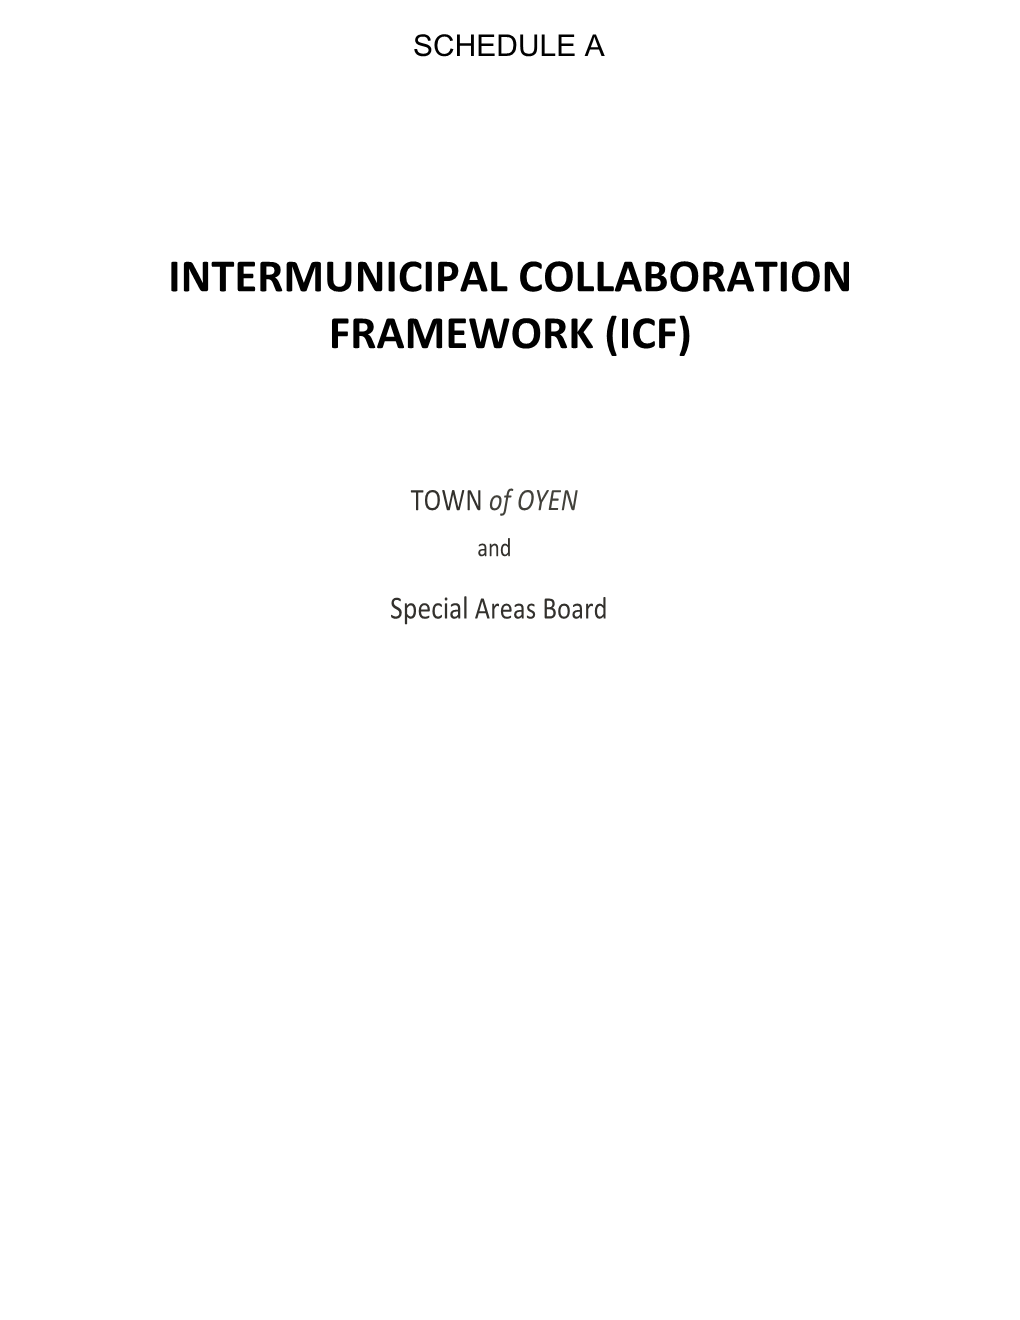 Intermunicipal Collaboration Framework (Icf)